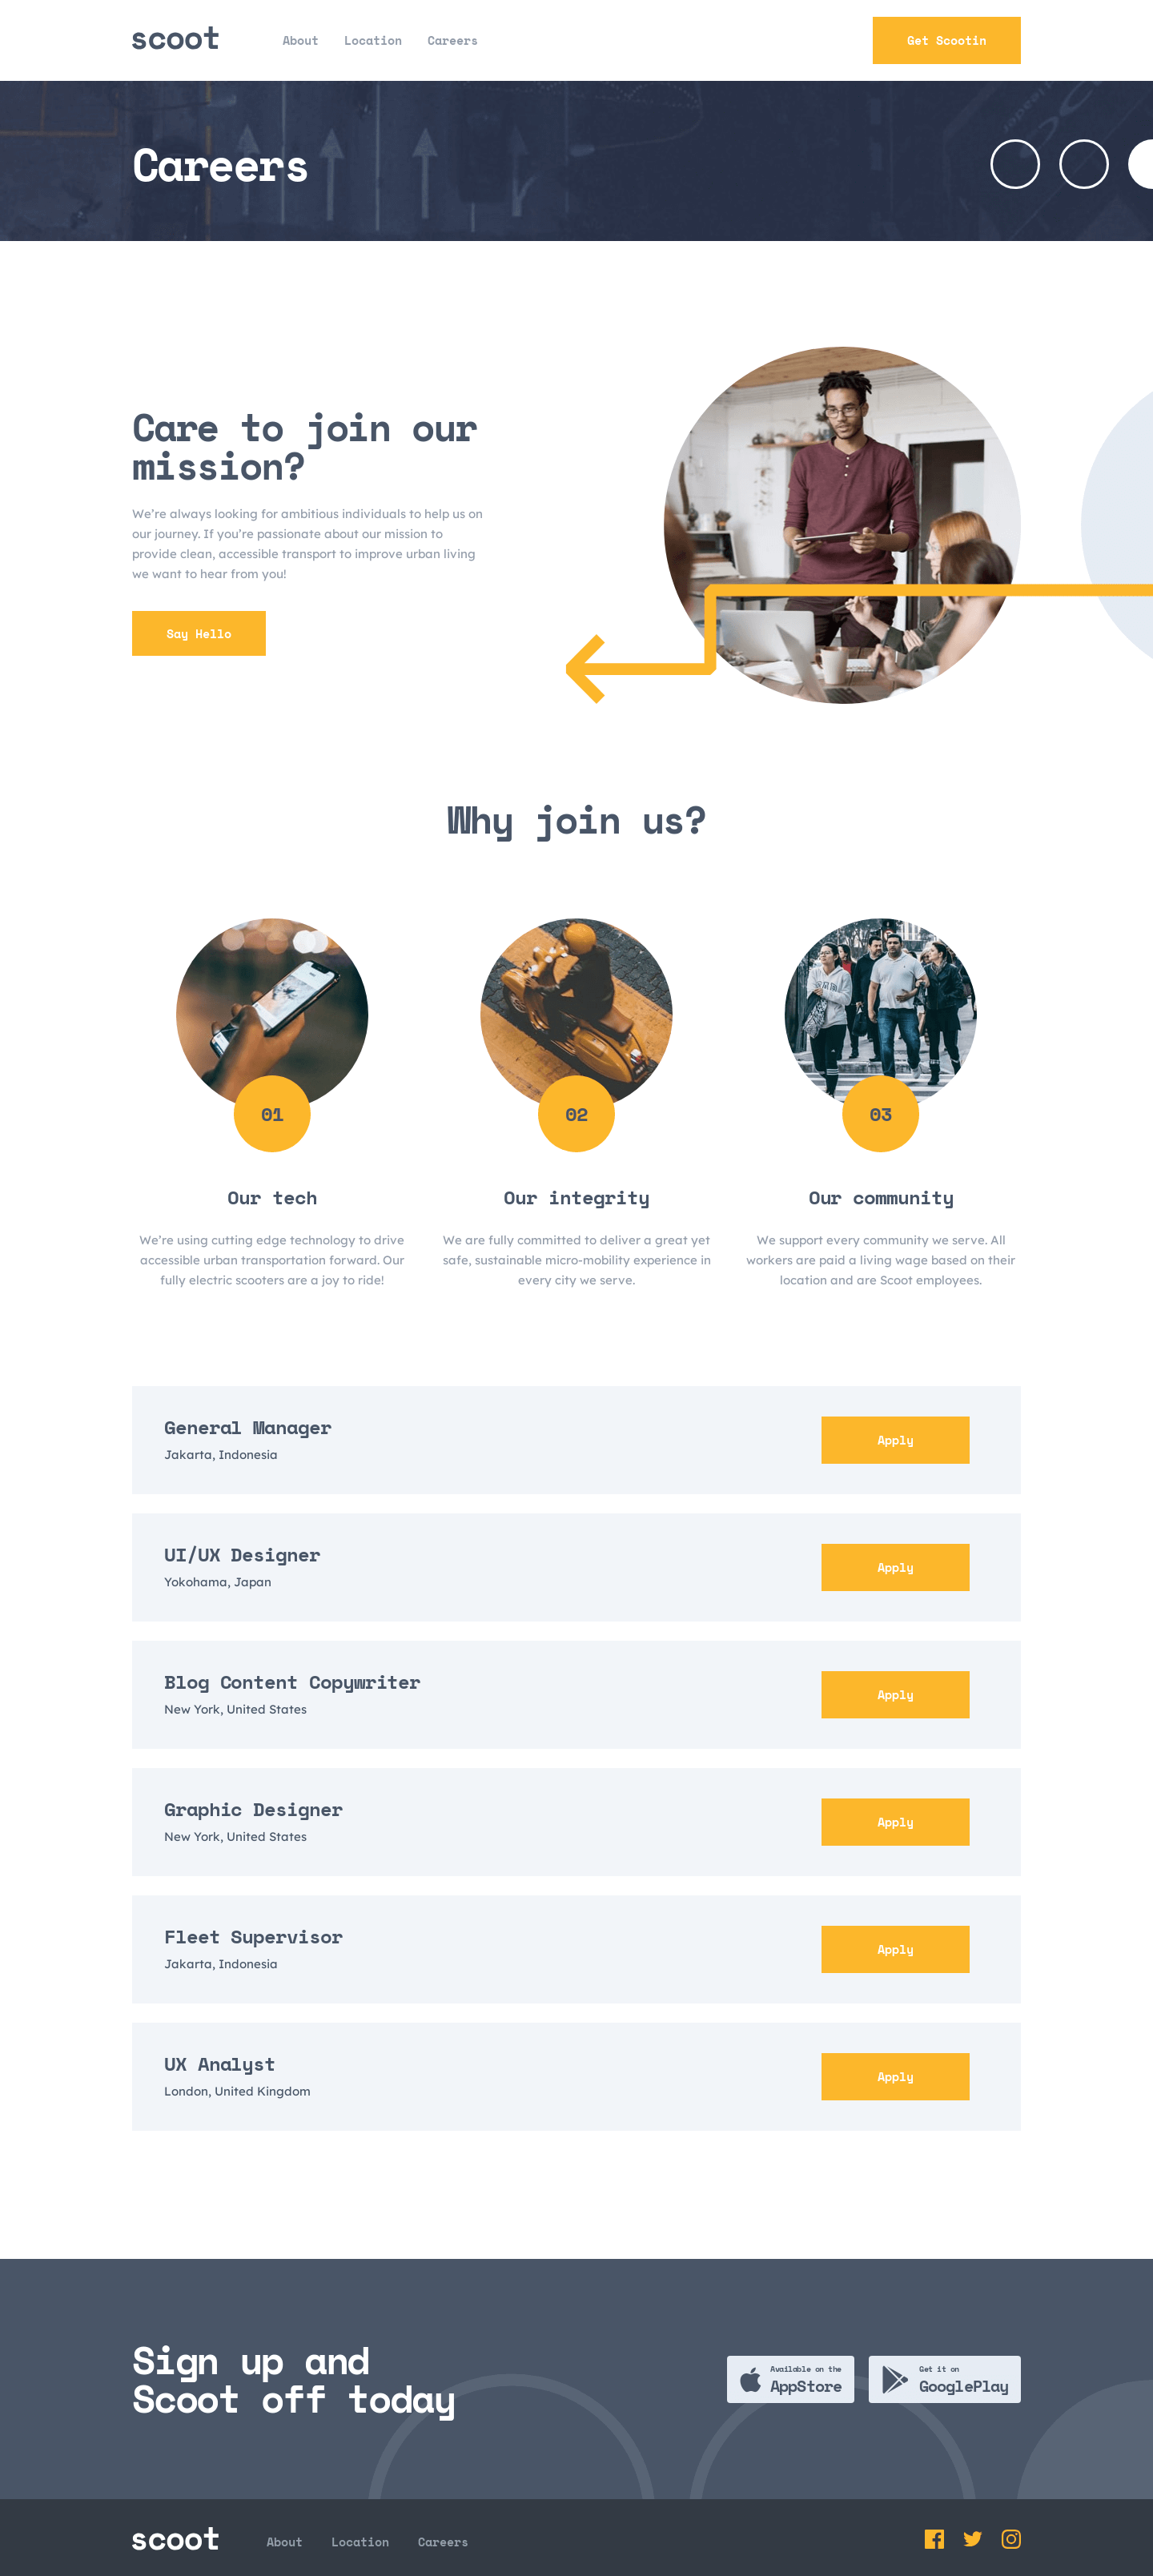 Desktop – Careers page